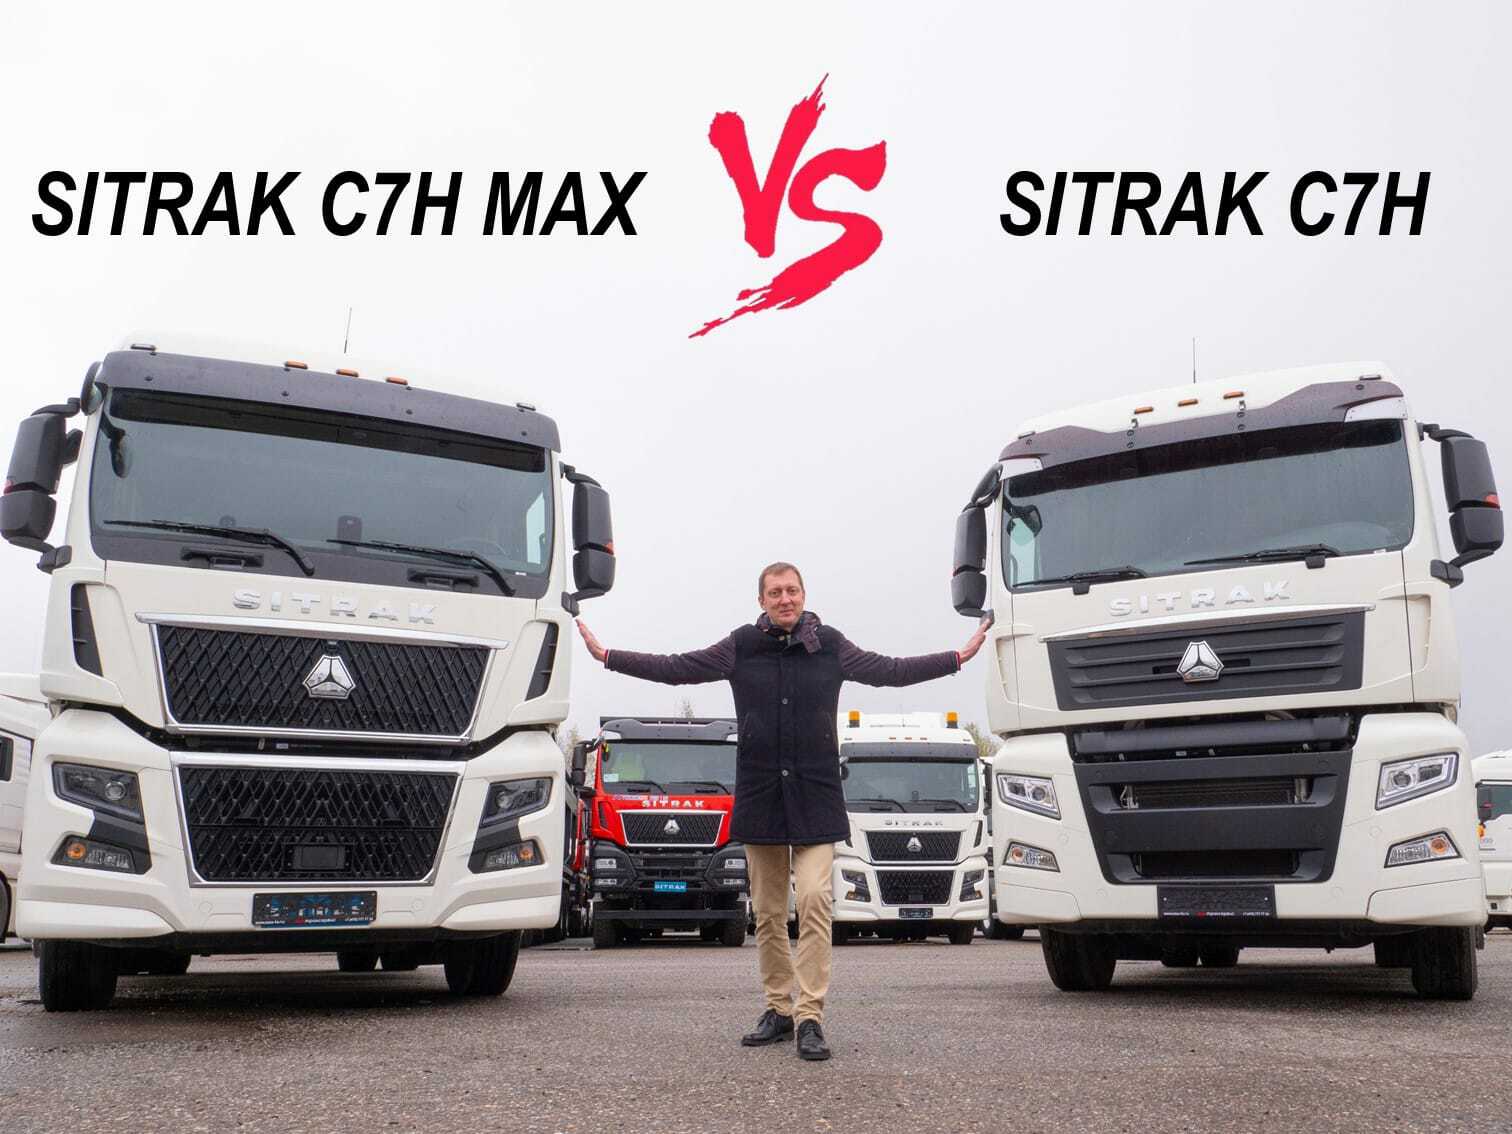 Вышел наш новый сравнительный обзор тягчей Sitrak C7H и C7H-MAX!